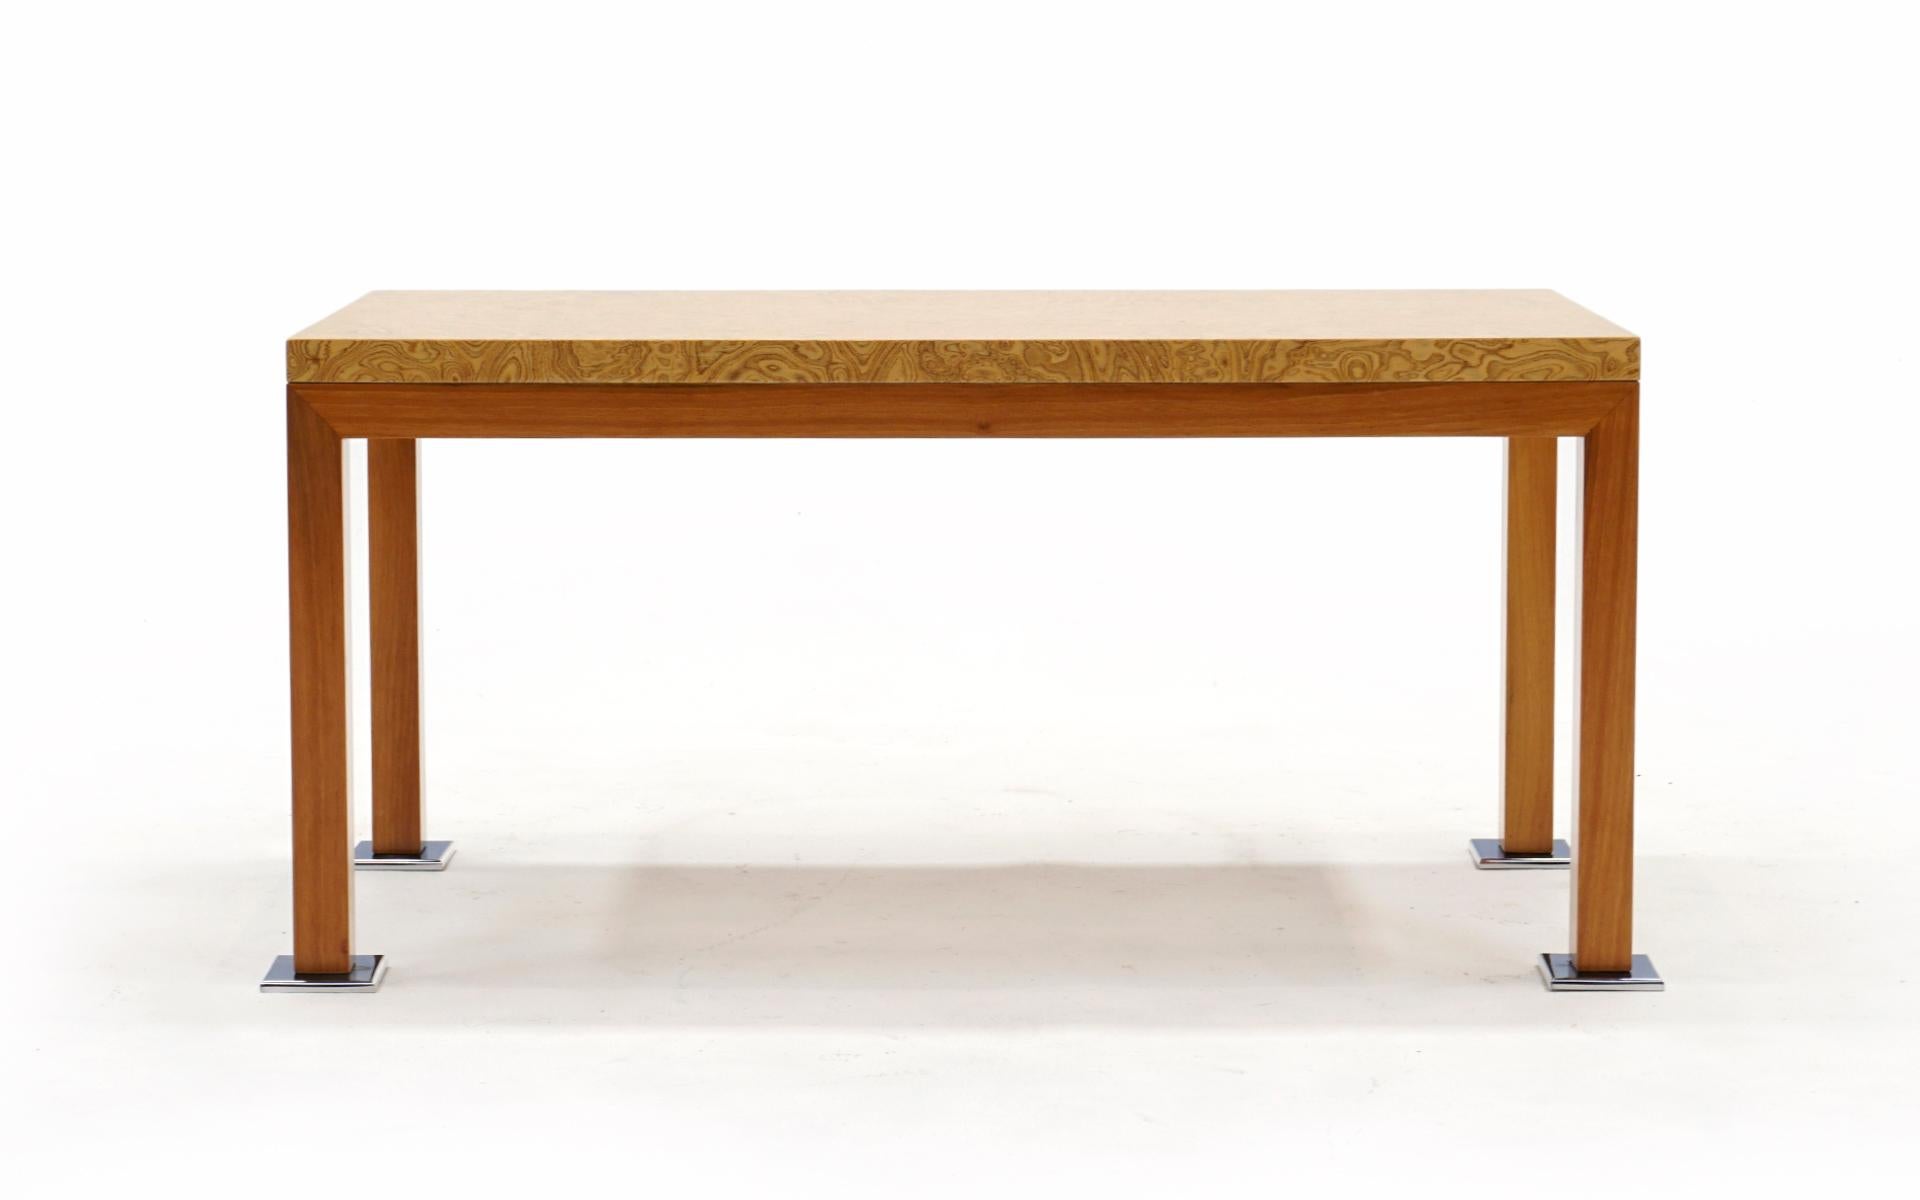 Cette table basse personnalisée unique en son genre, conçue par Ettore Sottsass, provient de la résidence Max Palevsky, à Malibu, en Californie. Magnifique plateau en bois de ronce avec cadre en chêne et pieds en aluminium poli. Sottsass Associati,